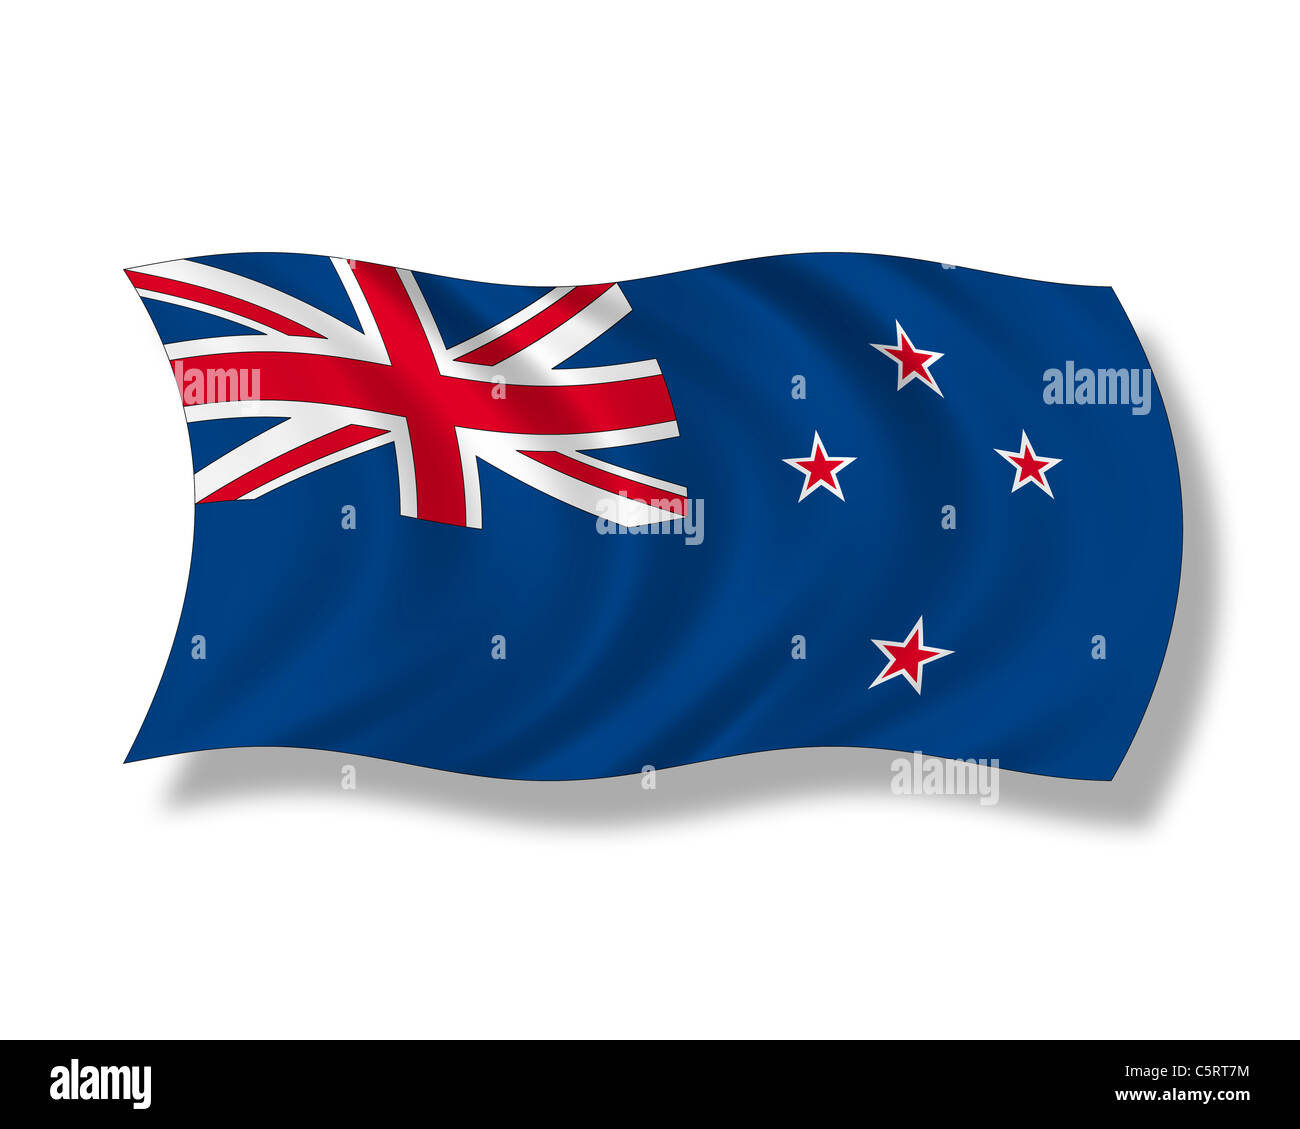 Illustration, New Zealand flag Stock Photo